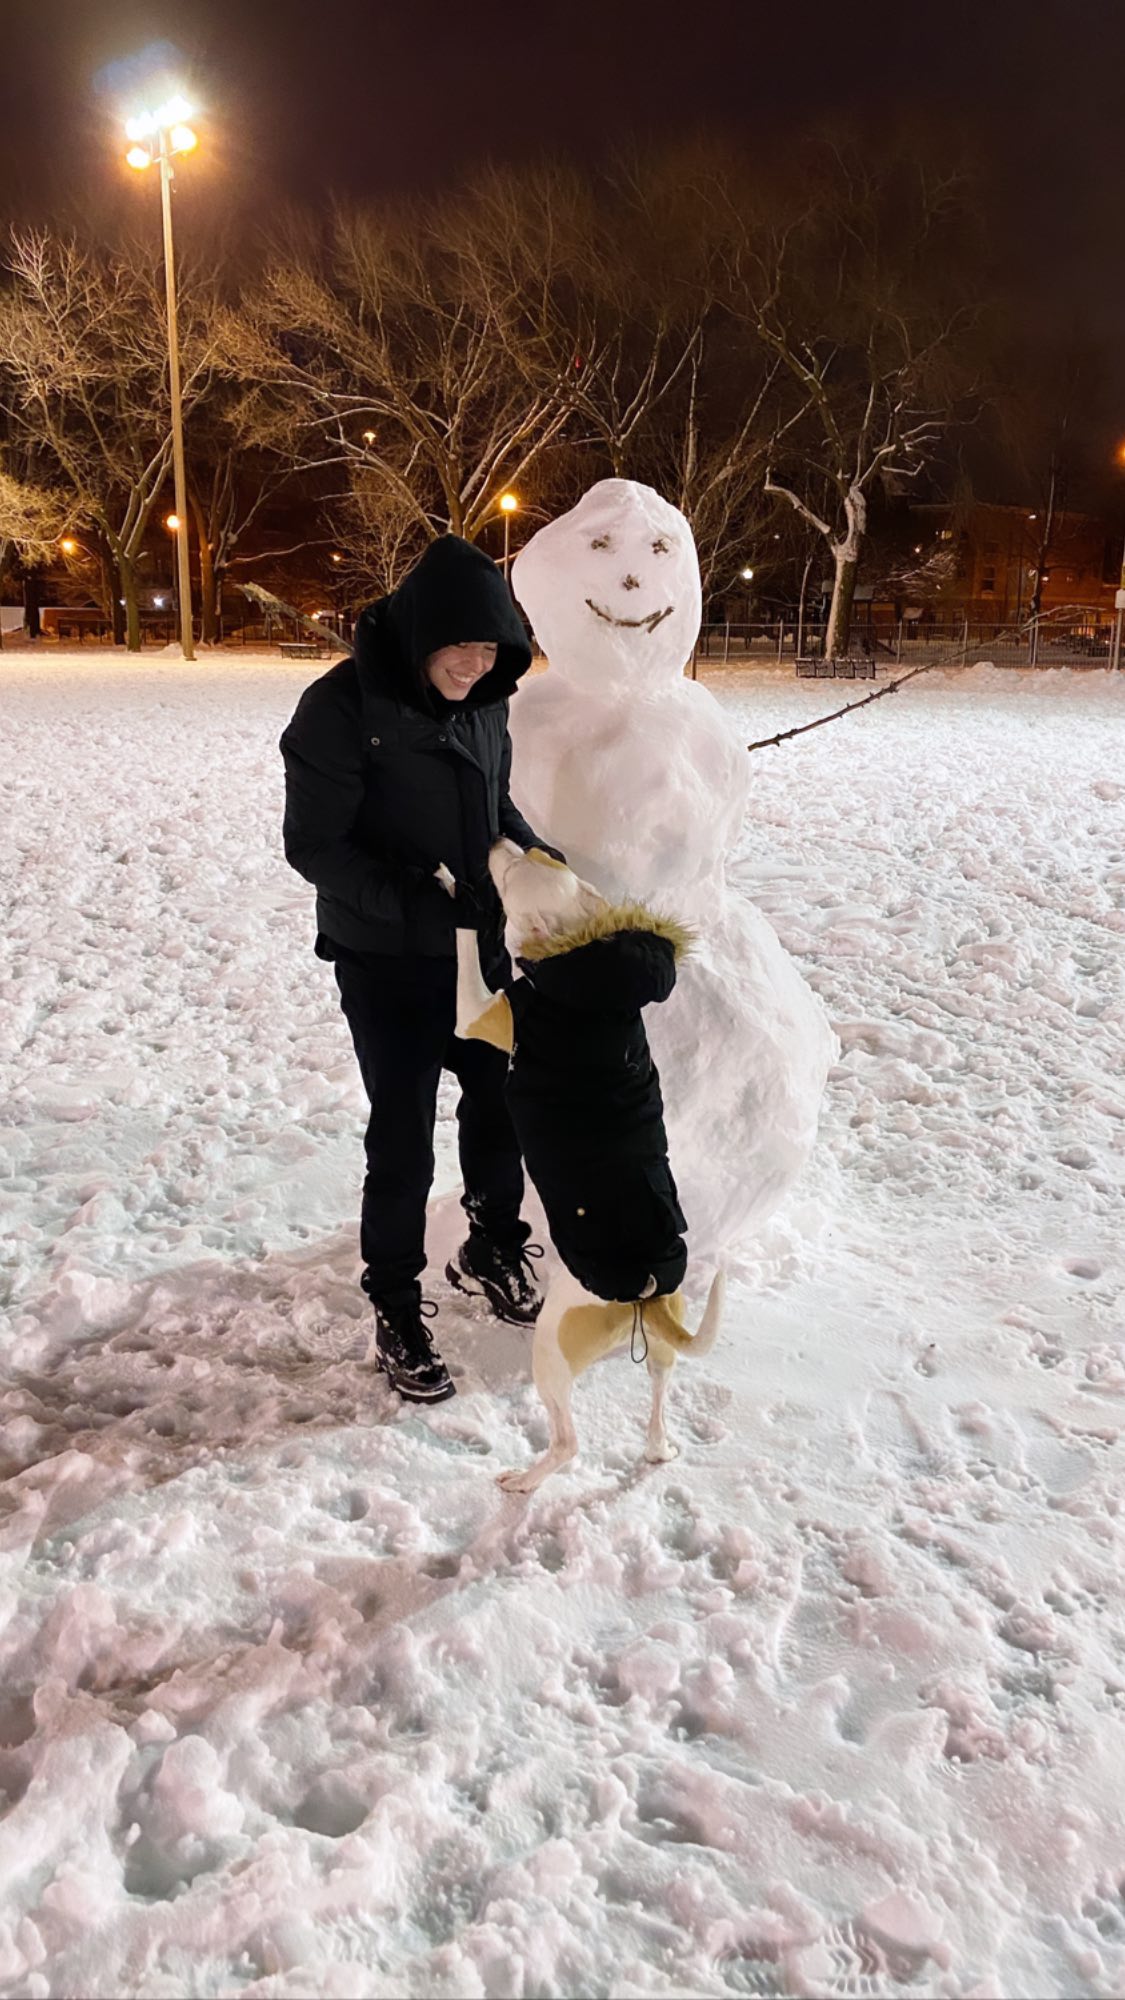 Photos n°5 : Sydney Sweeney Builds a Snowman Army!